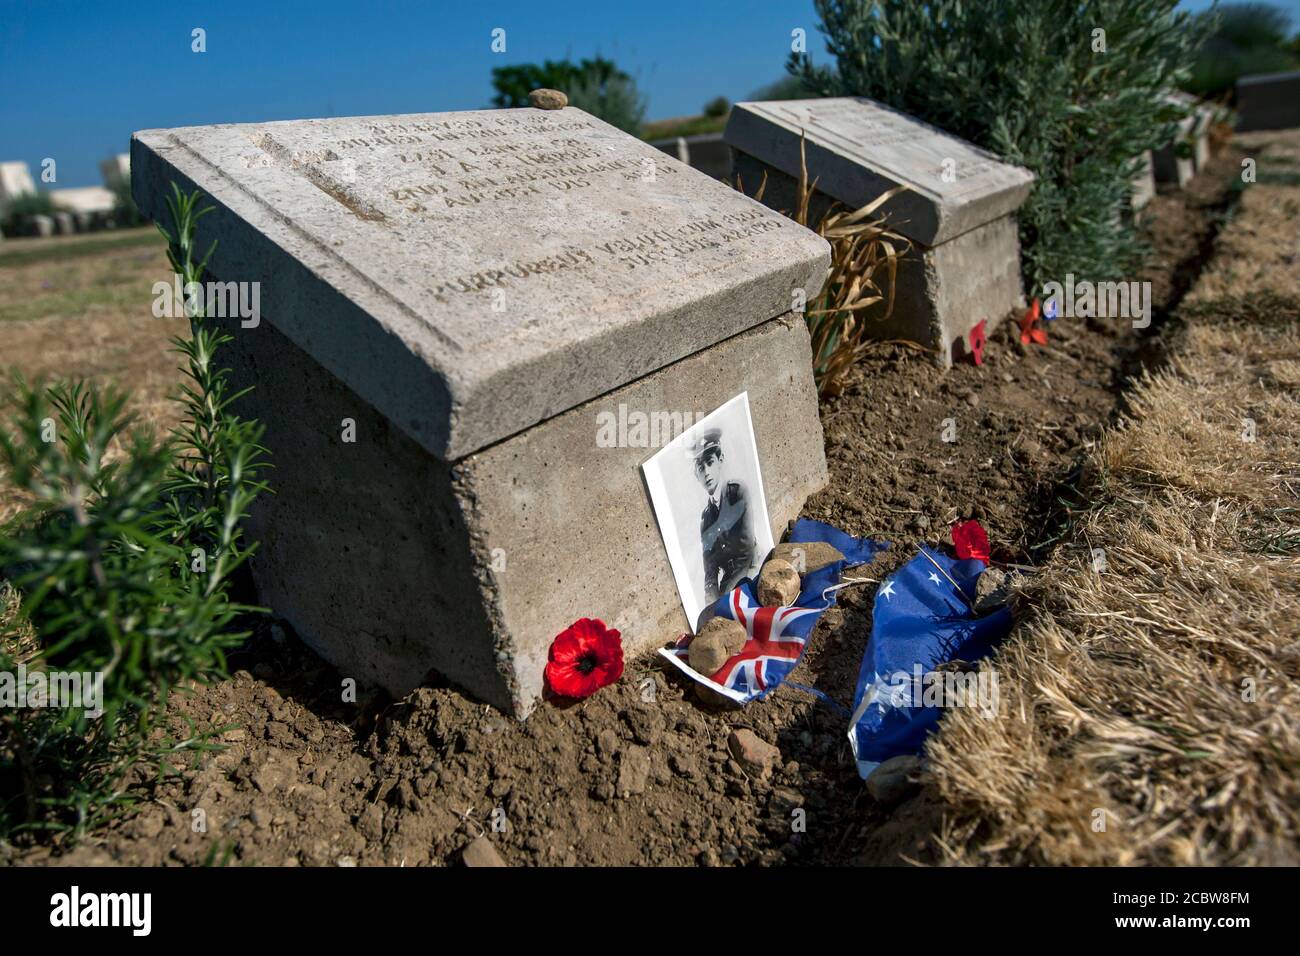 La pierre tombale du Lone Pine en Turquie du soldat australien 2251 lance Cpl J.A.E. Harris, 2e BN Australian Inf. Il est décédé le 8 août 1915, âgé de 13 ans. Banque D'Images